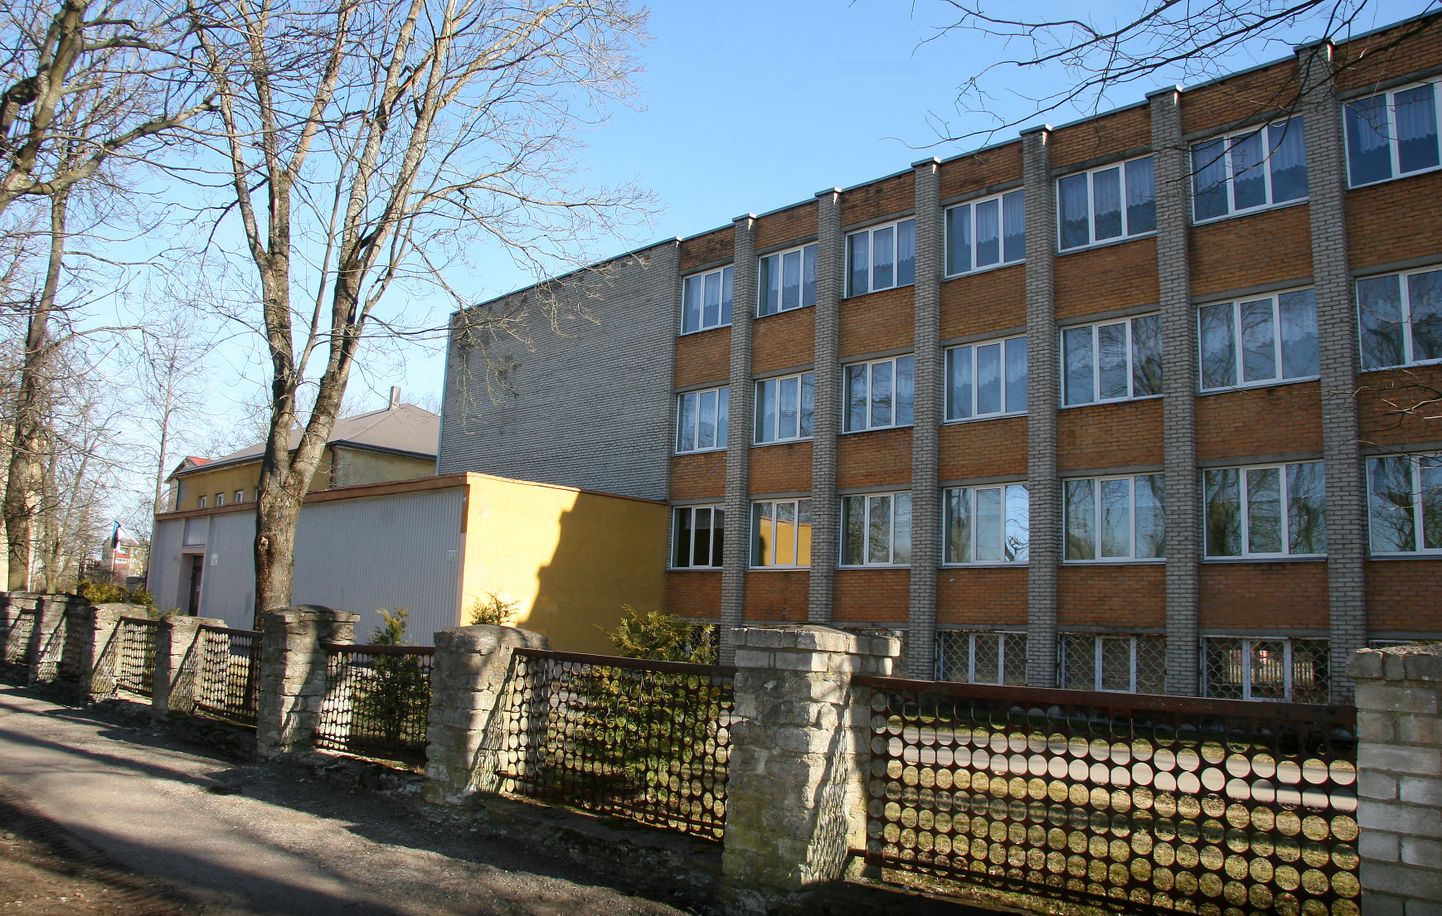 Selles hoones tegutseb Kohtla-Järve Kesklinna põhikool viimast õppeaastat.